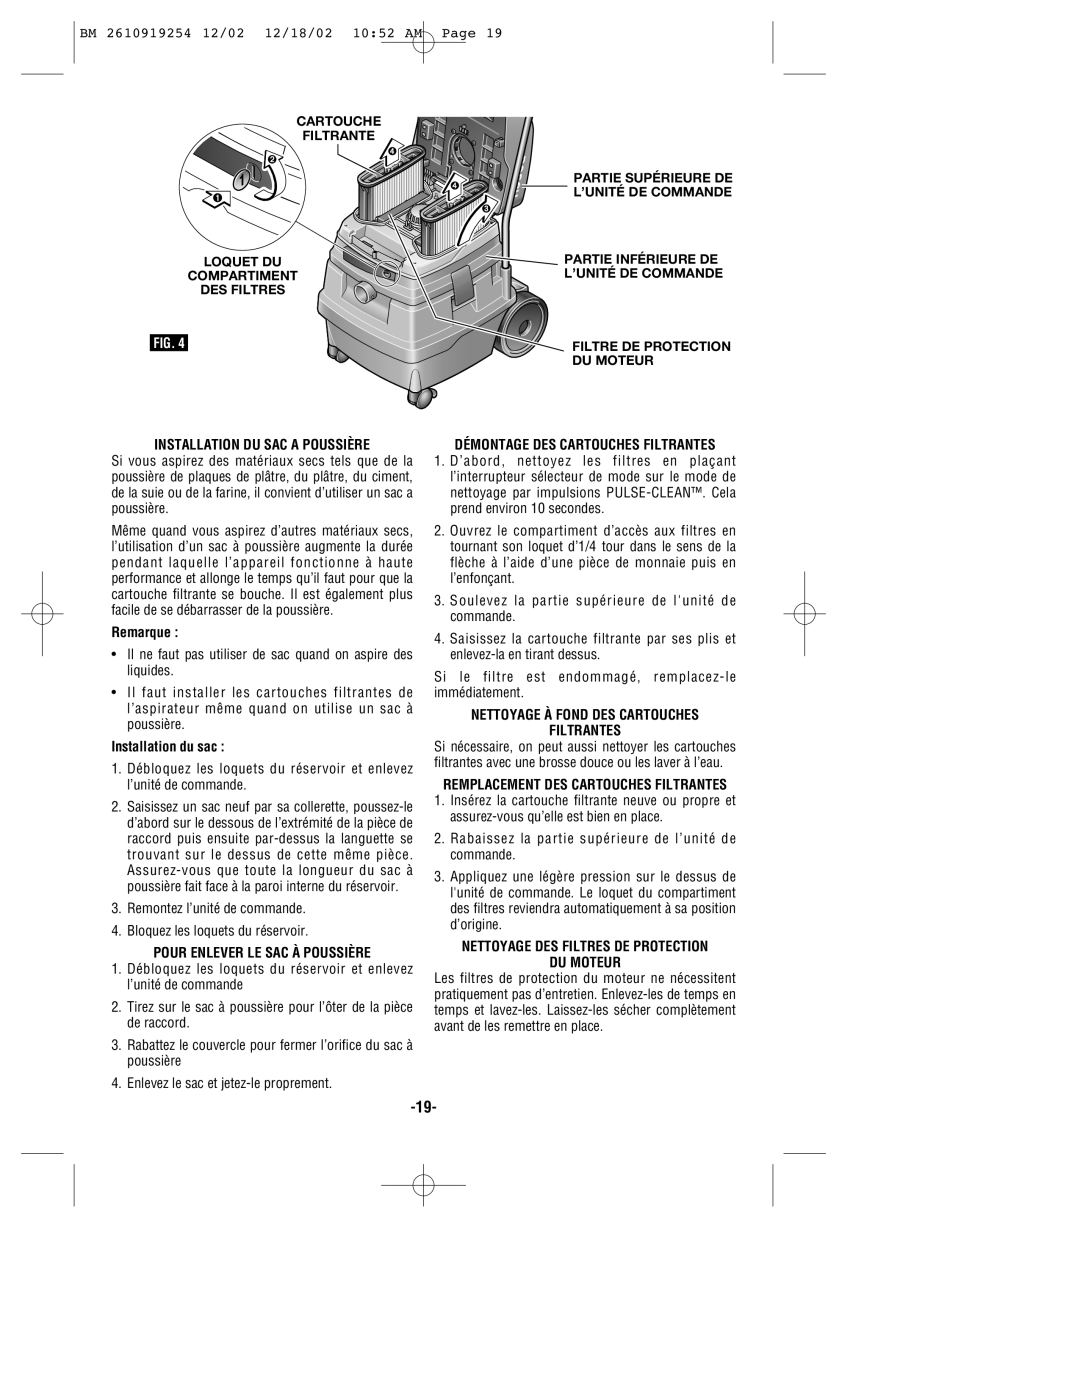 Bosch Appliances 3931 manual Installation DU SAC a Poussière, Pour Enlever LE SAC À Poussière 